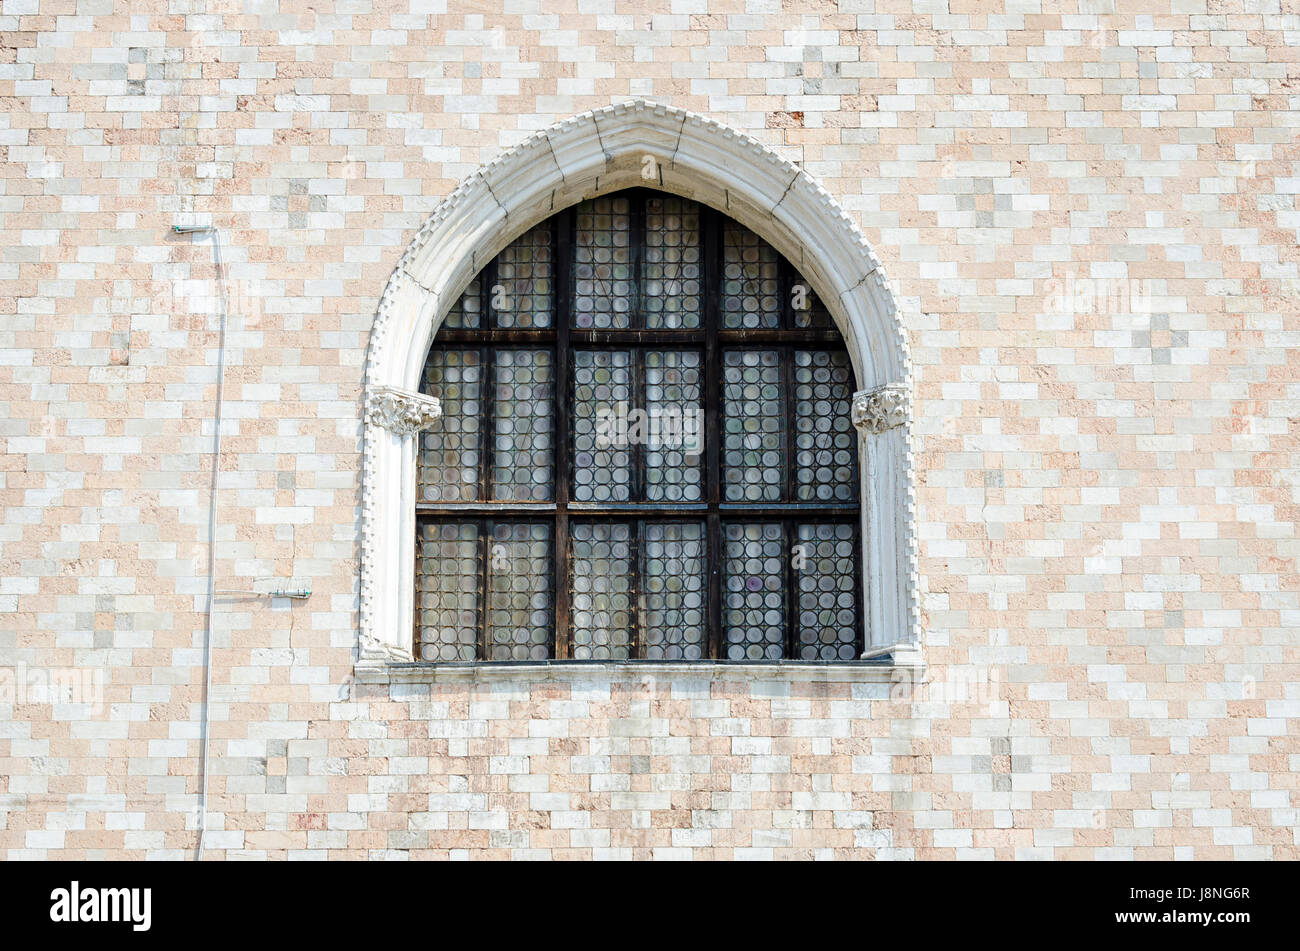 Dettagli architettonici del gotico veneziano lancet arch finestra con pattern di Moresco muratura del Palazzo Ducale di Venezia, Italia Foto Stock